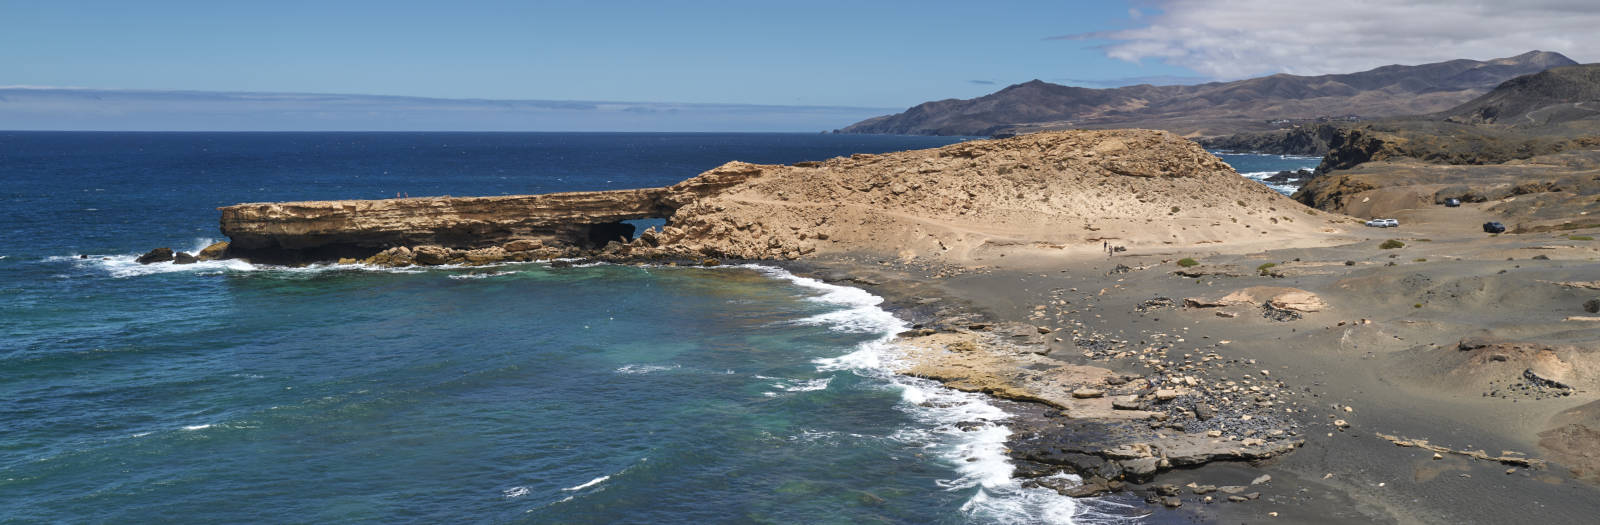 Playa de la Pared Fuerteventura.